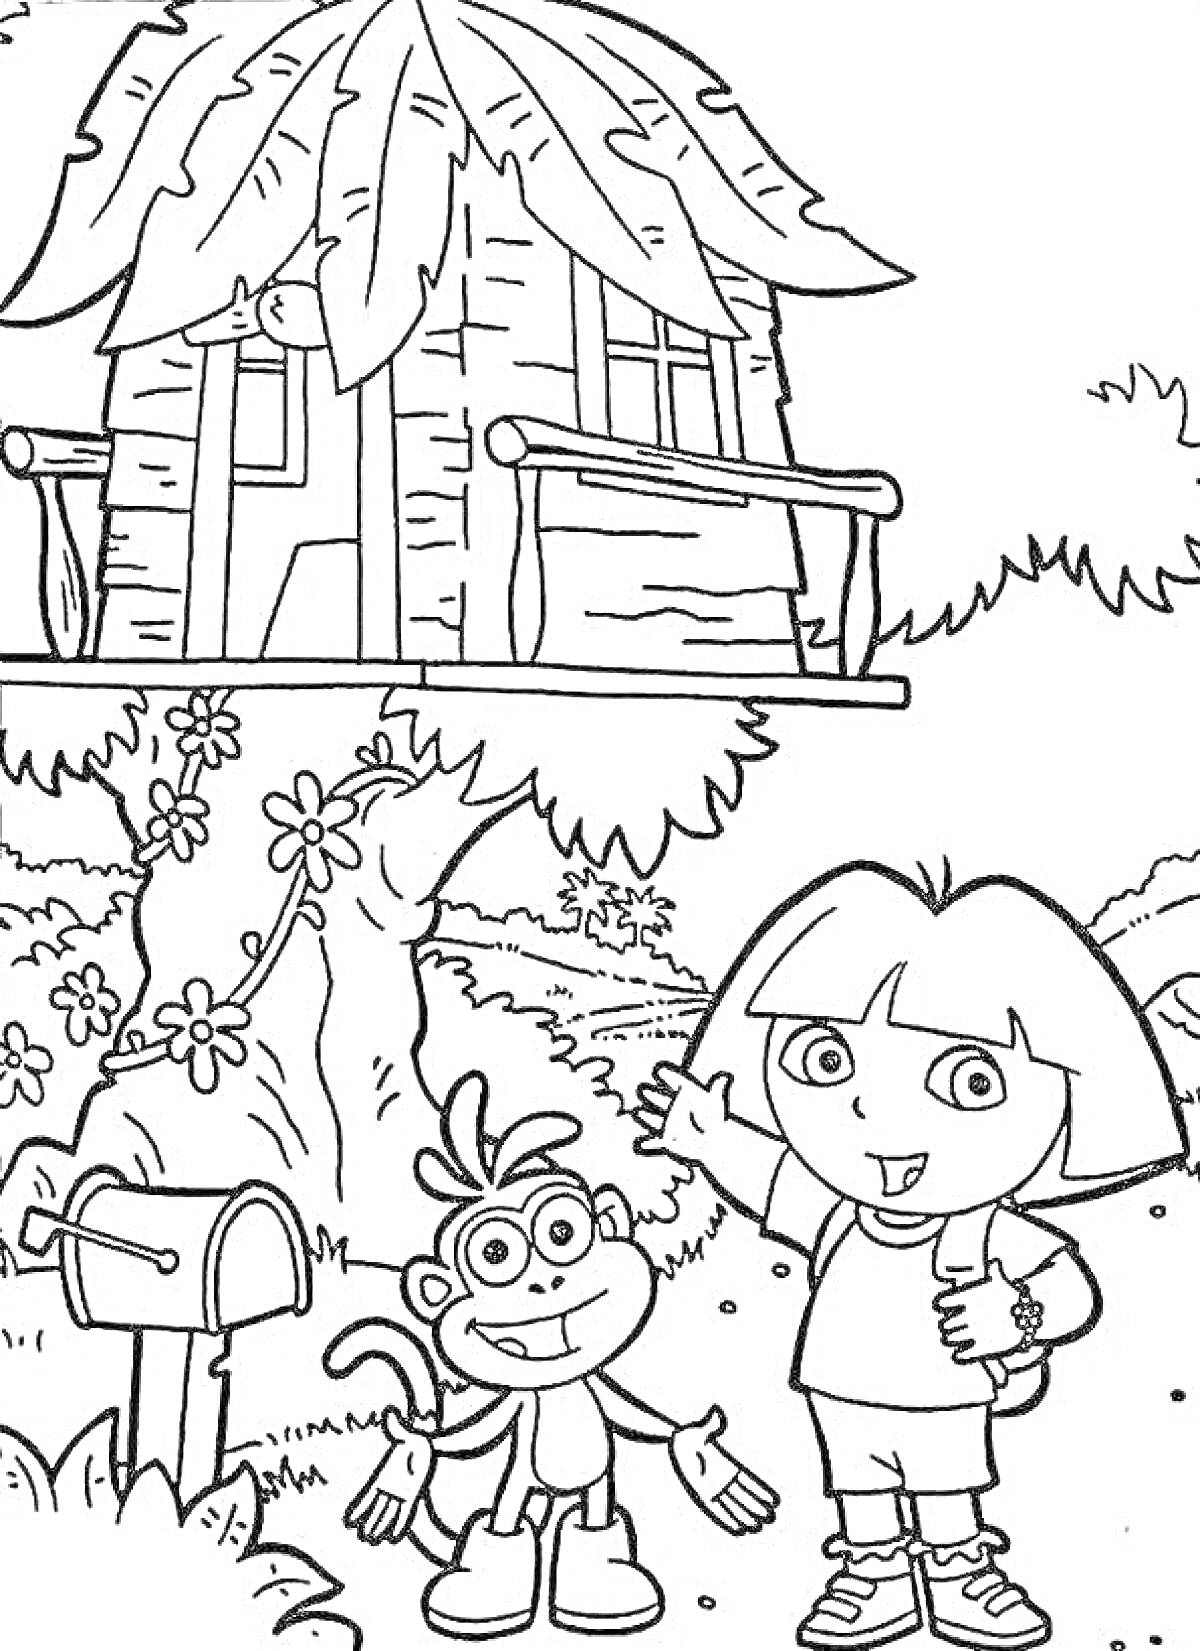 Раскраска Дом на дереве с персонажами, почтовый ящик, обезьянка, девочка с рюкзаком, цветы, кусты